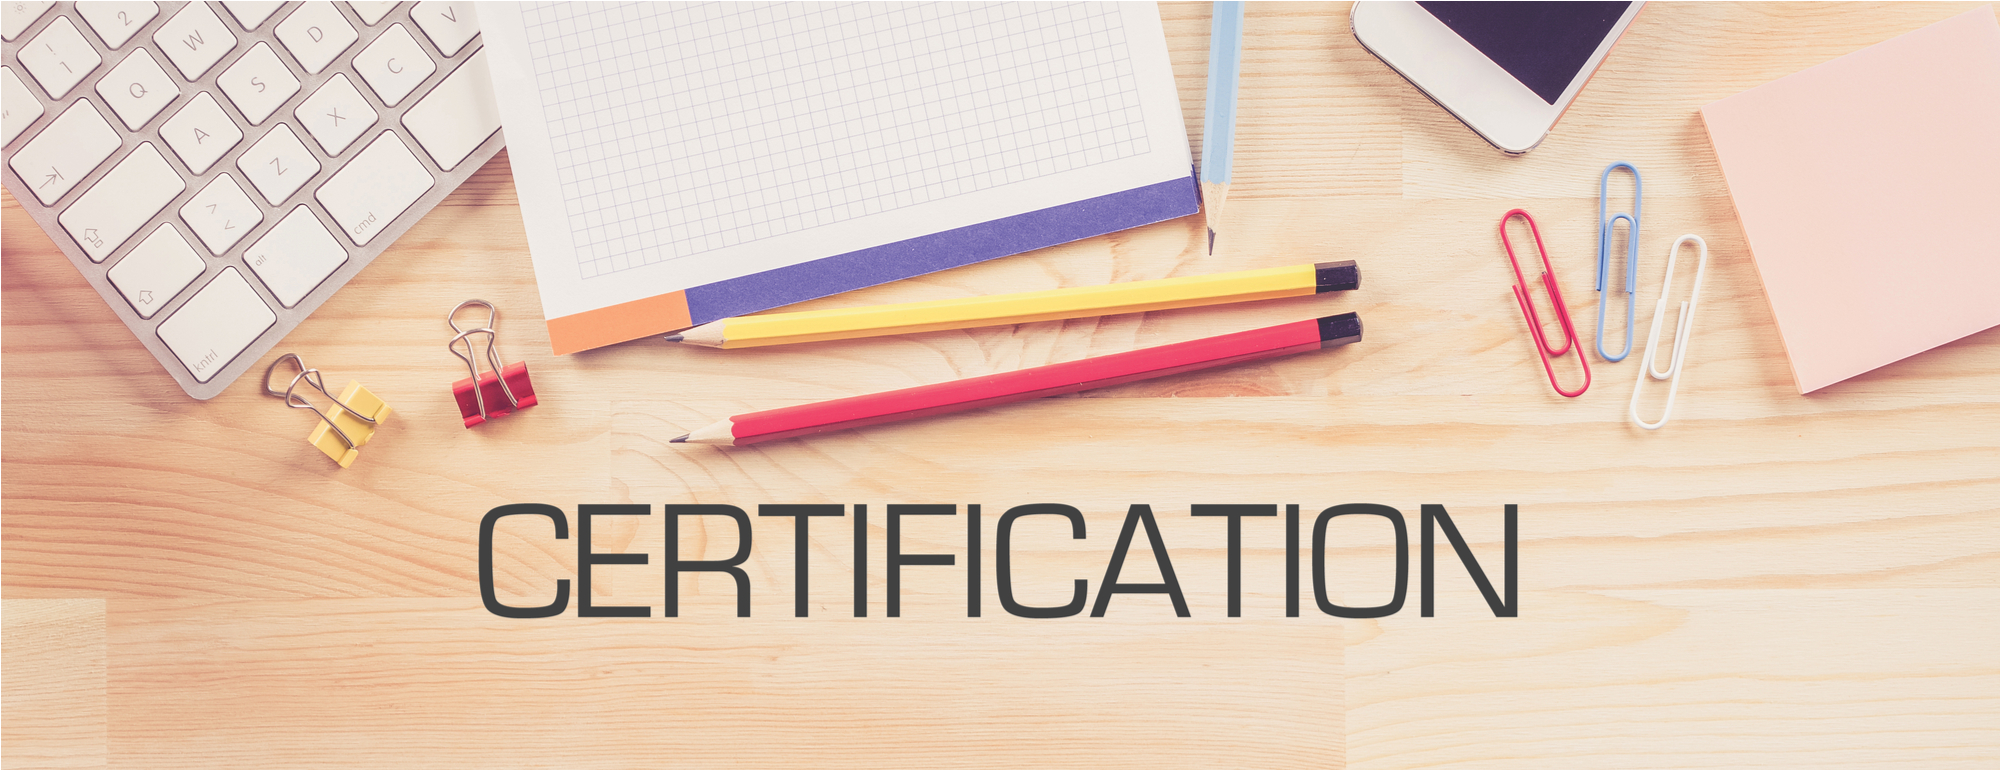 certification_slider.jpg